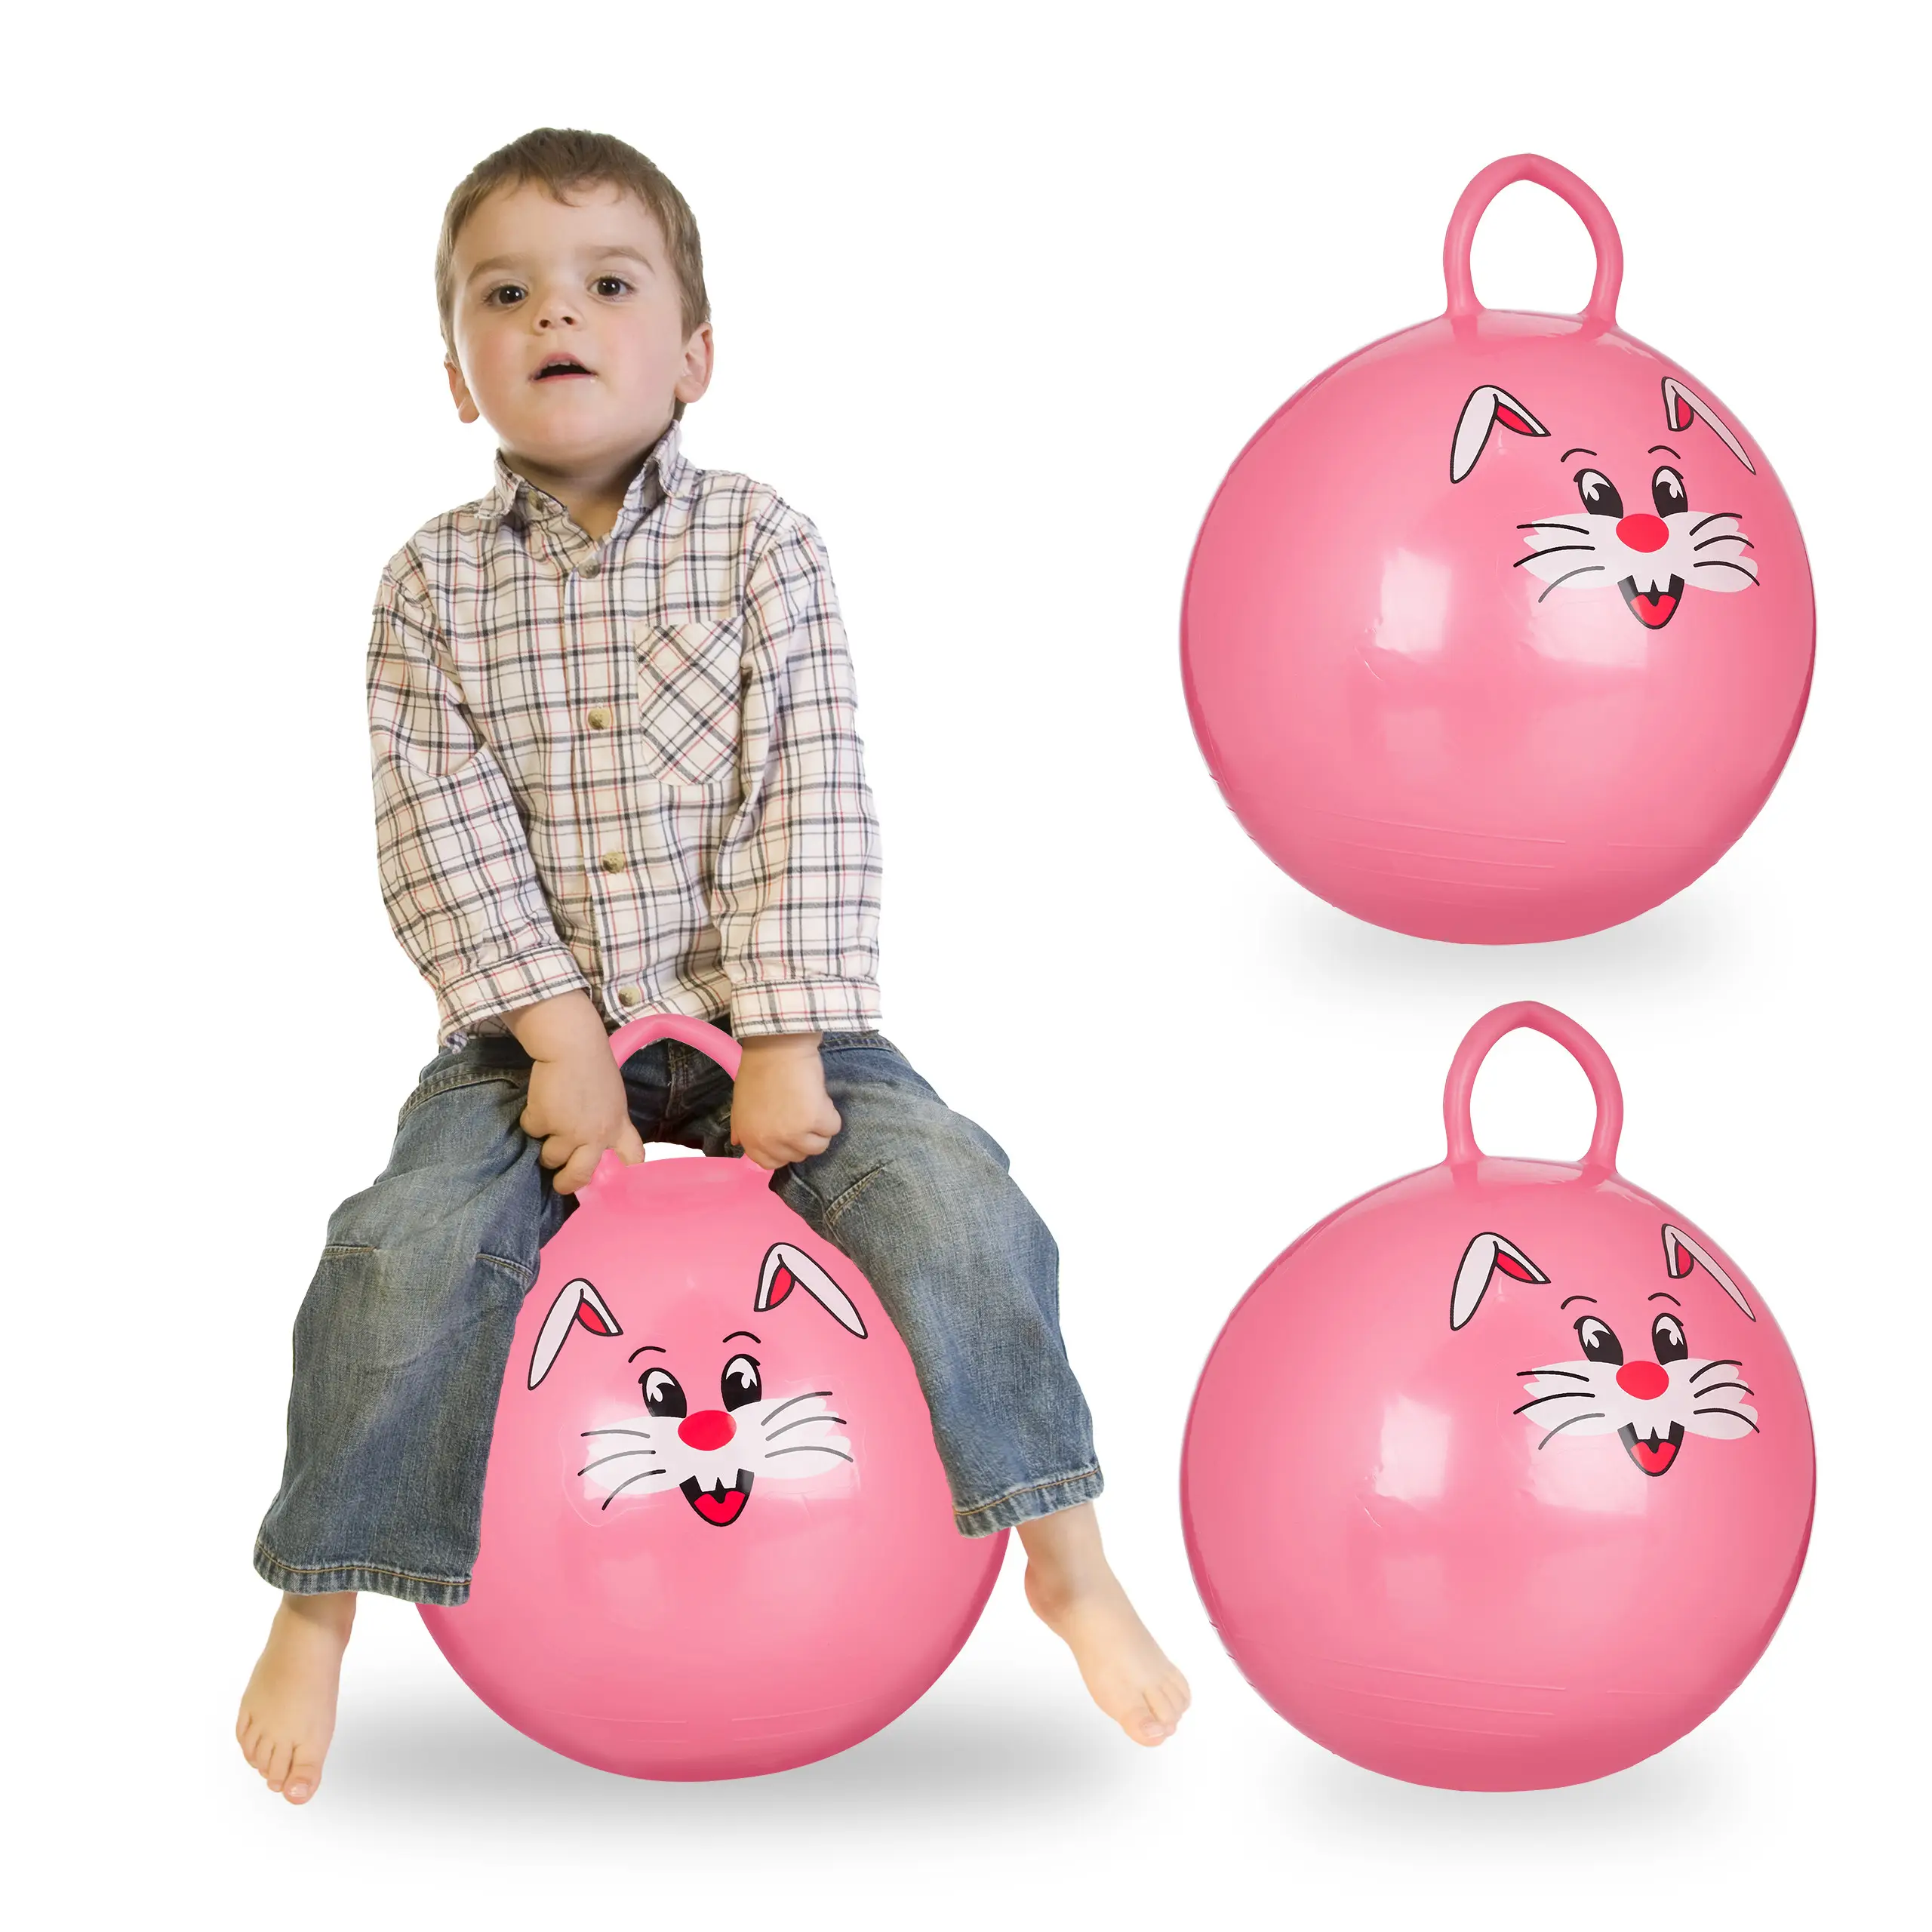 3 x H眉pfball Kinder pink | Schaukeltiere & Schaukelpferde